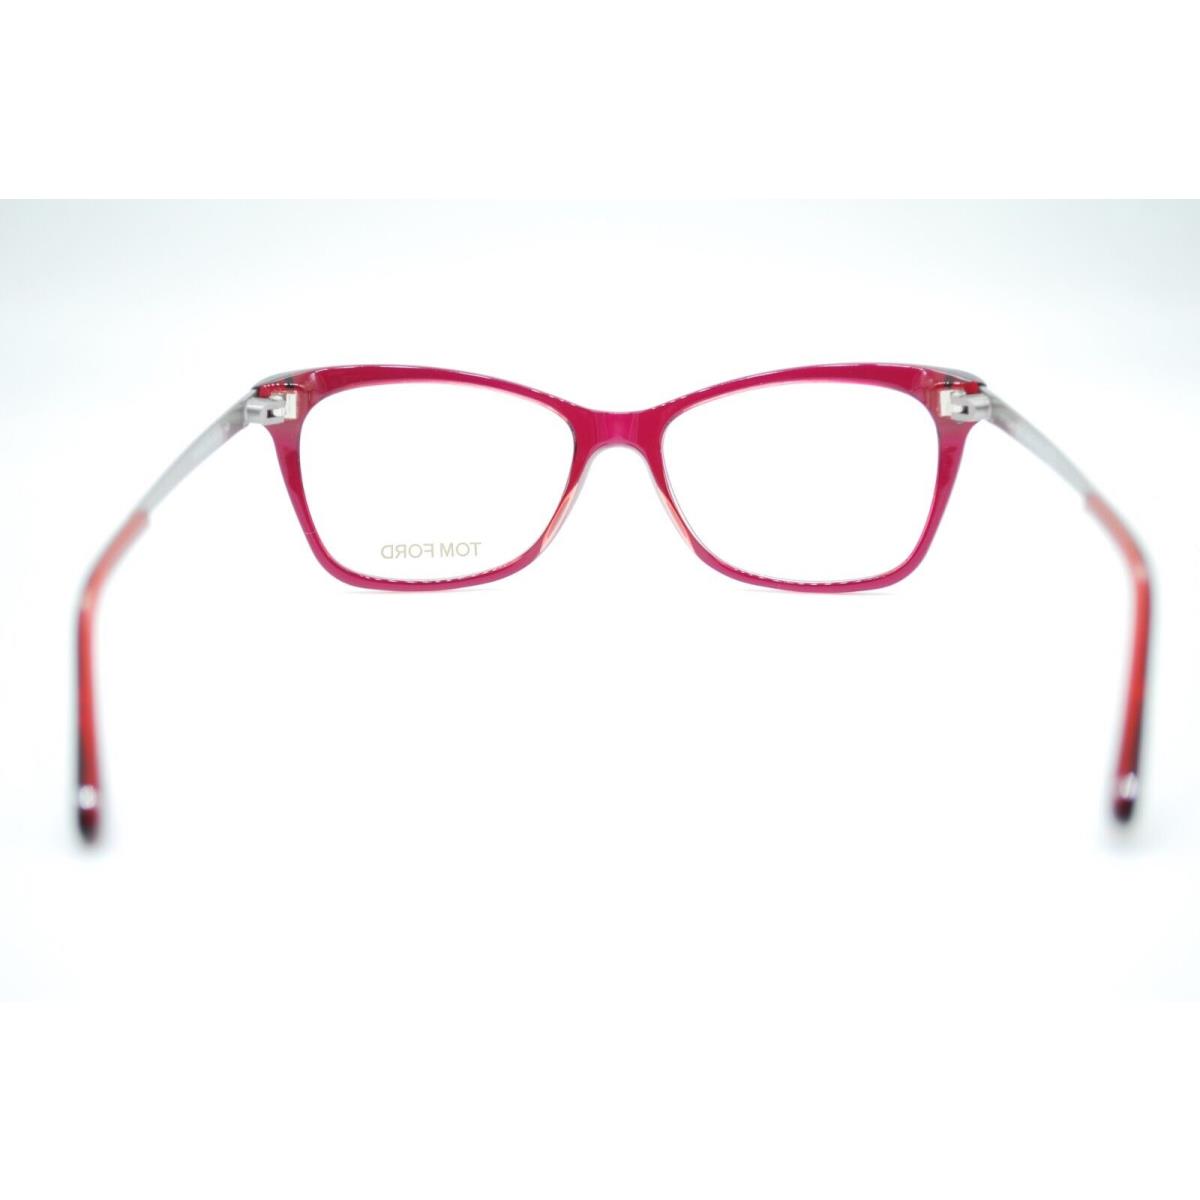 Tom Ford eyeglasses  - Red Frame 3